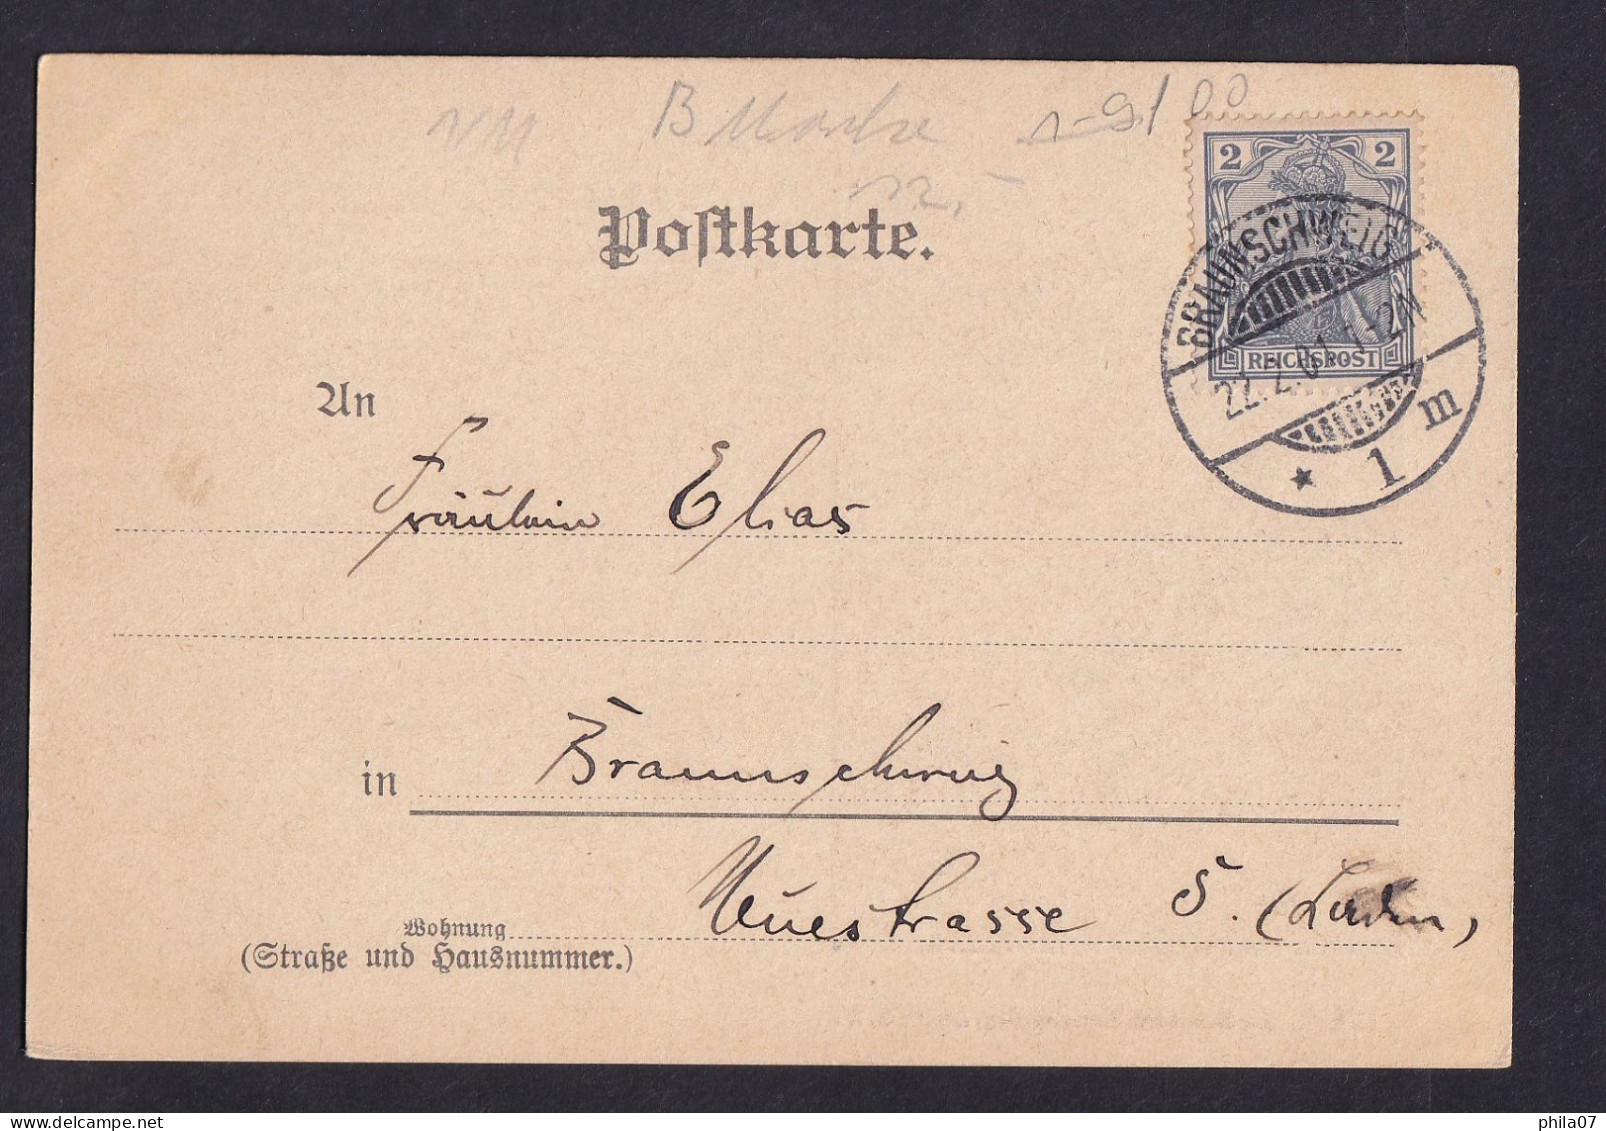 Gruss Aus .... - E.Riedel, Kunstverlag, Berlin S.W. / Year 1901 / Long Line Postcard Circulated, 2 Scans - Saluti Da.../ Gruss Aus...